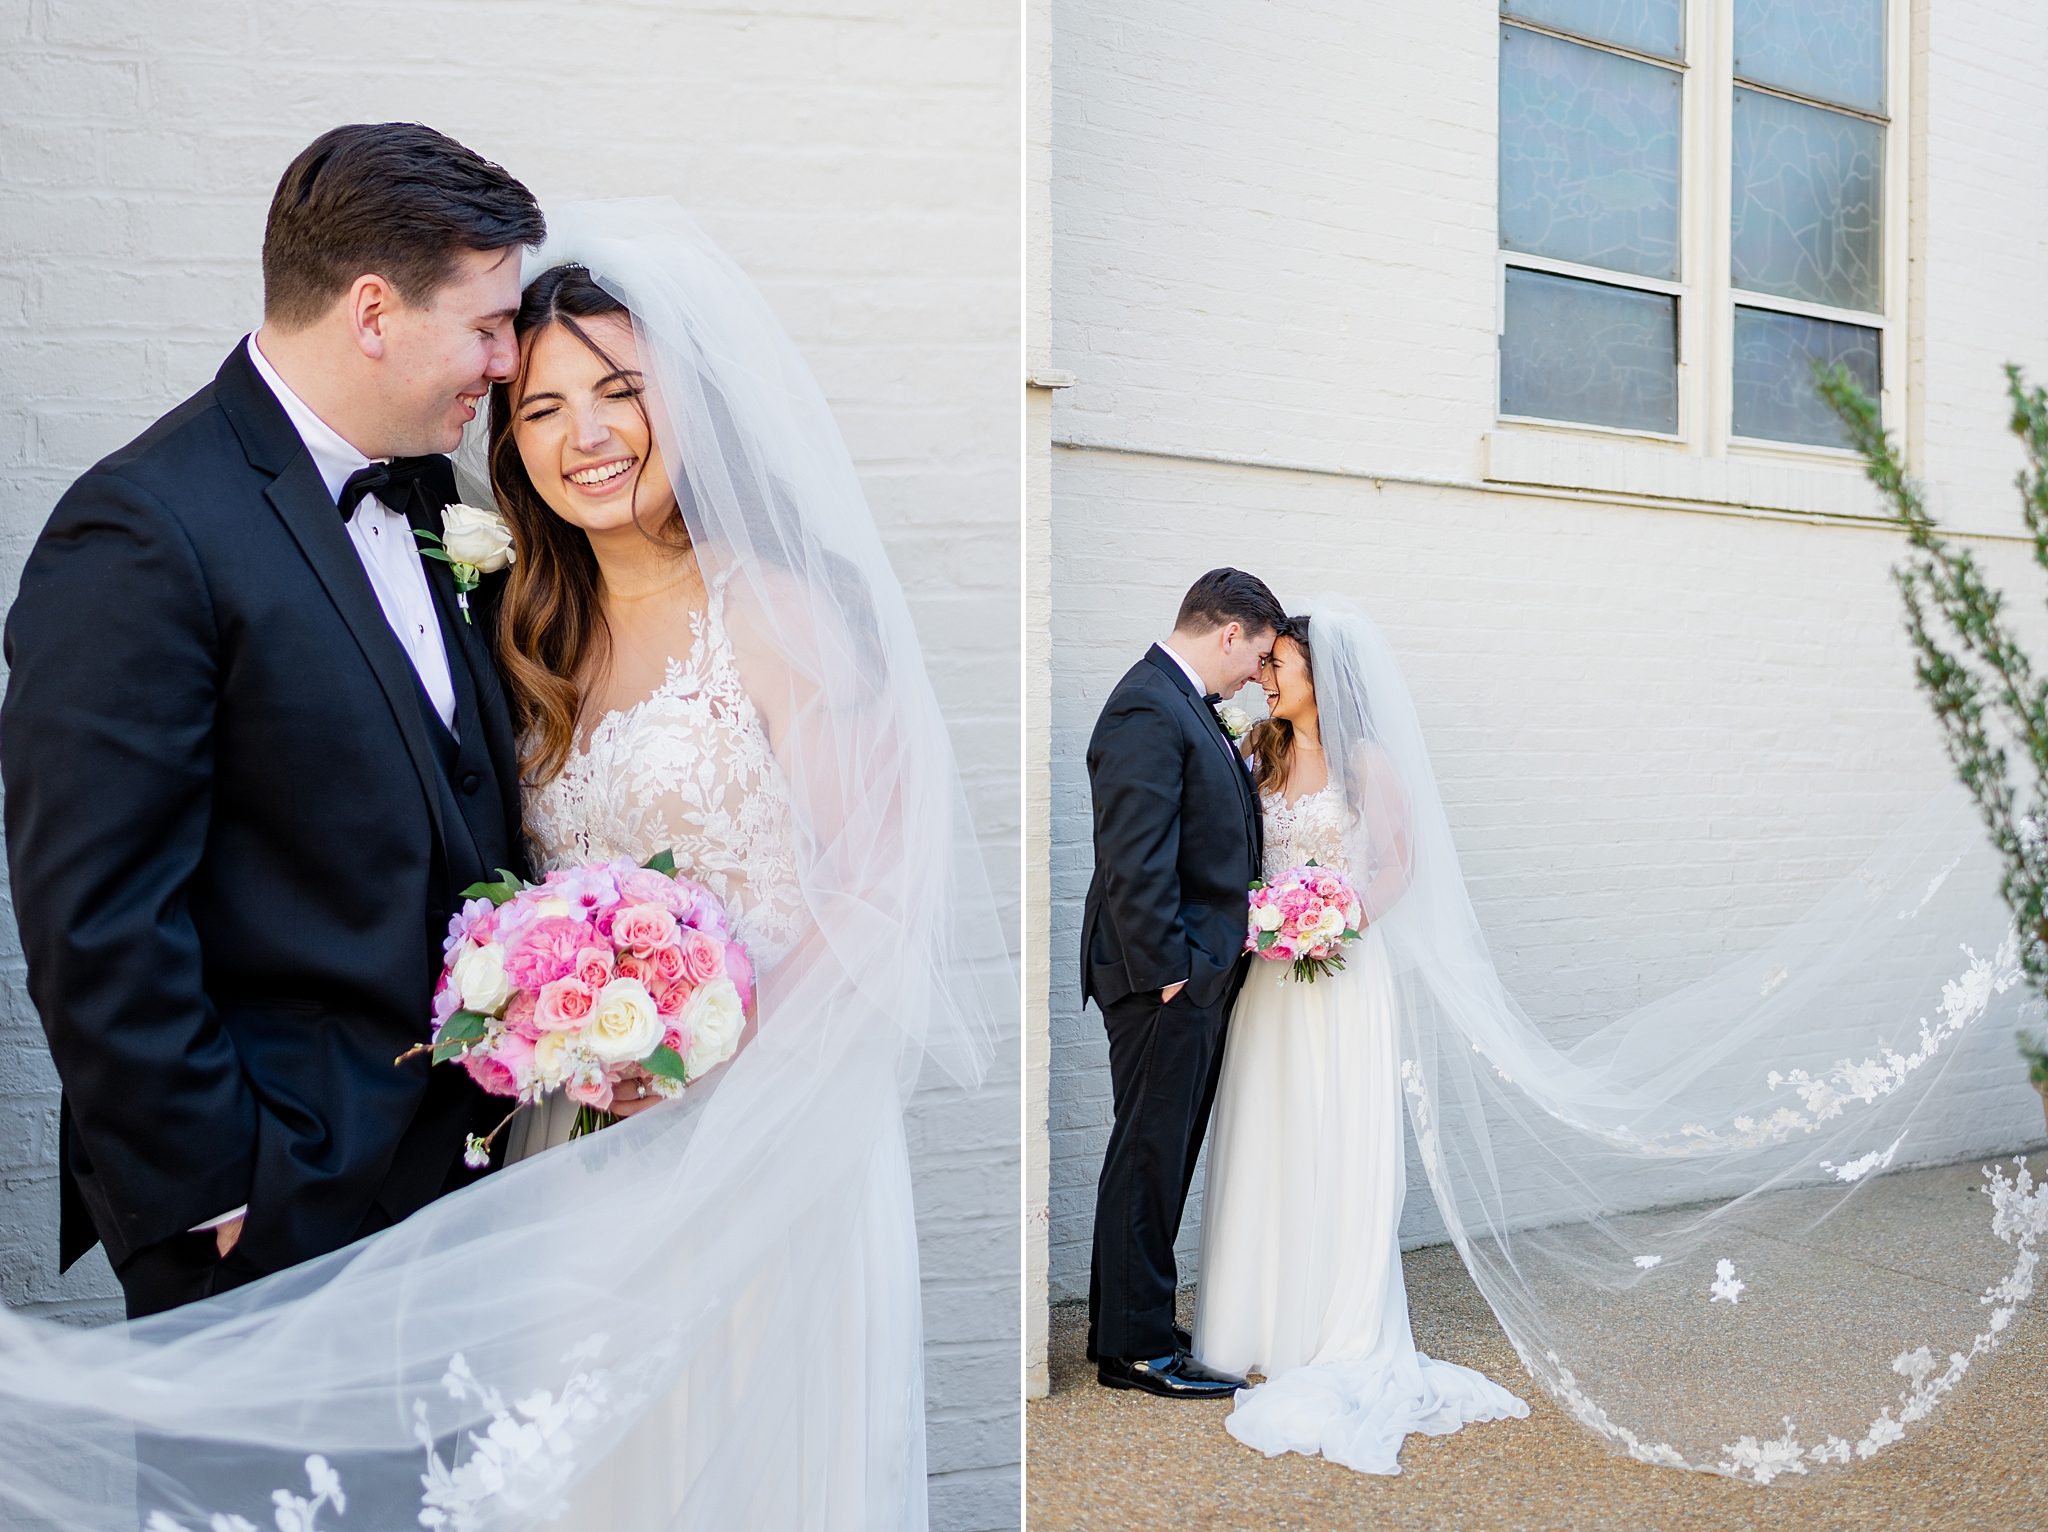 Long wedding veil pictures in Alexandria, VA.